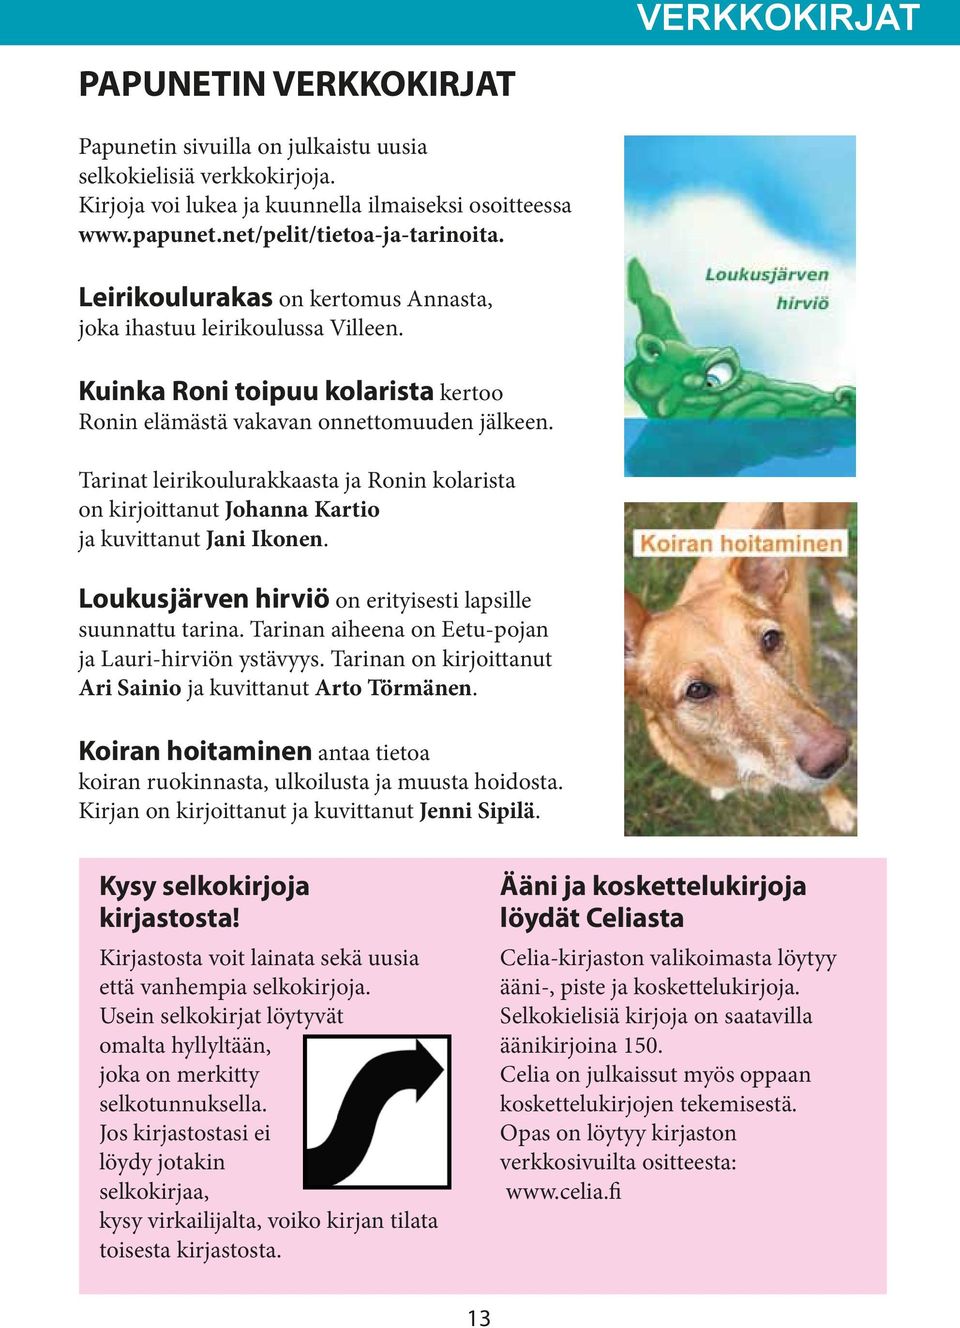 Tarinat leirikoulurakkaasta ja Ronin kolarista on kirjoittanut Johanna Kartio ja kuvittanut Jani Ikonen. Loukusjärven hirviö on erityisesti lapsille suunnattu tarina.